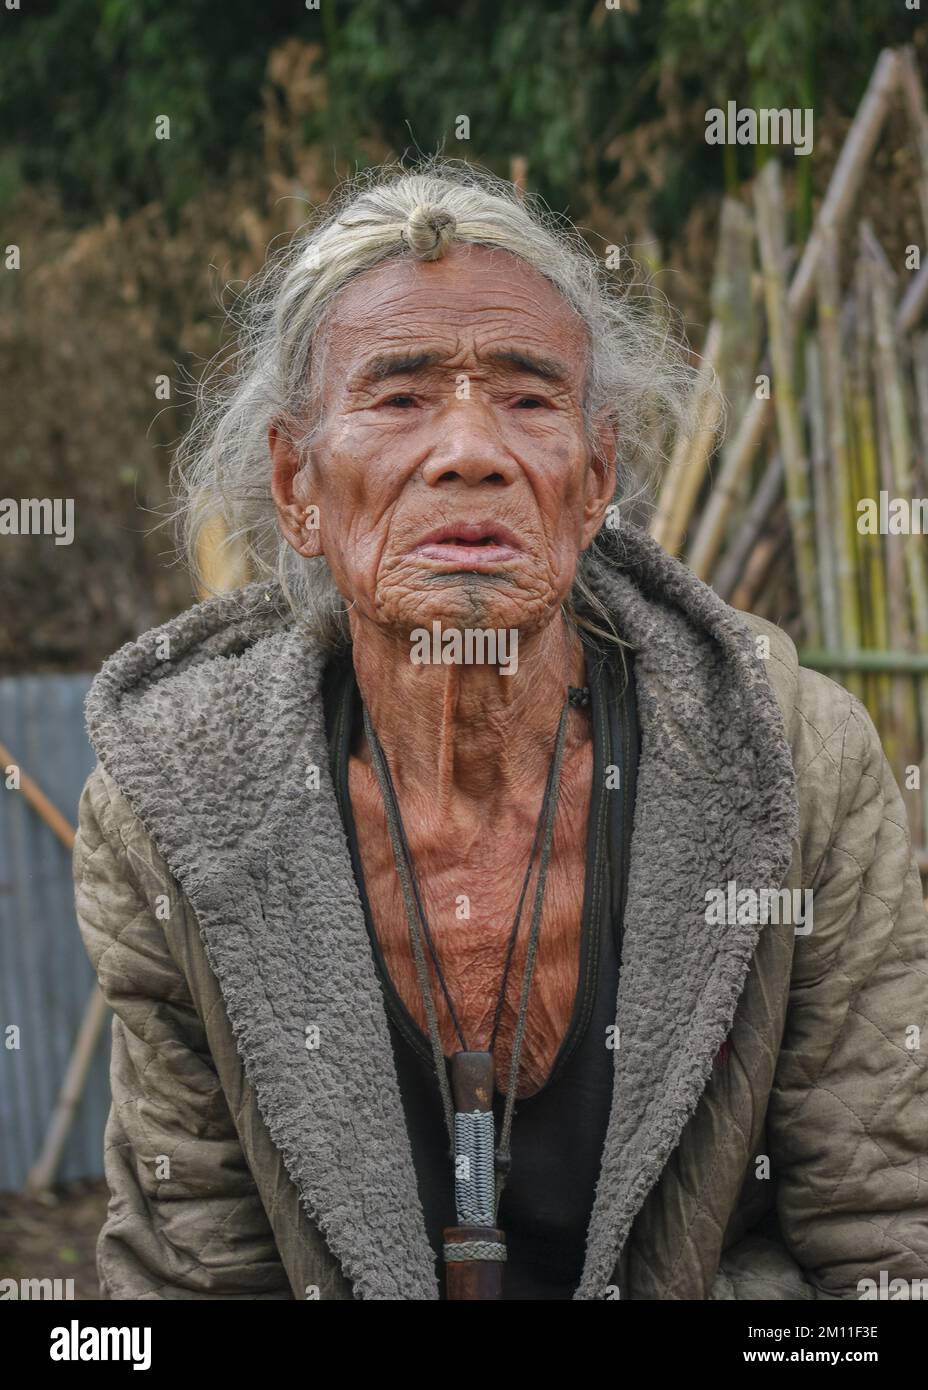 Ziro, Arunachal Pradesh, Inde - 02 19 2013 : Portrait de l'ancien homme tribal des Apatani avec tatouage traditionnel au menton et cheveu frontal assis à l'extérieur Banque D'Images